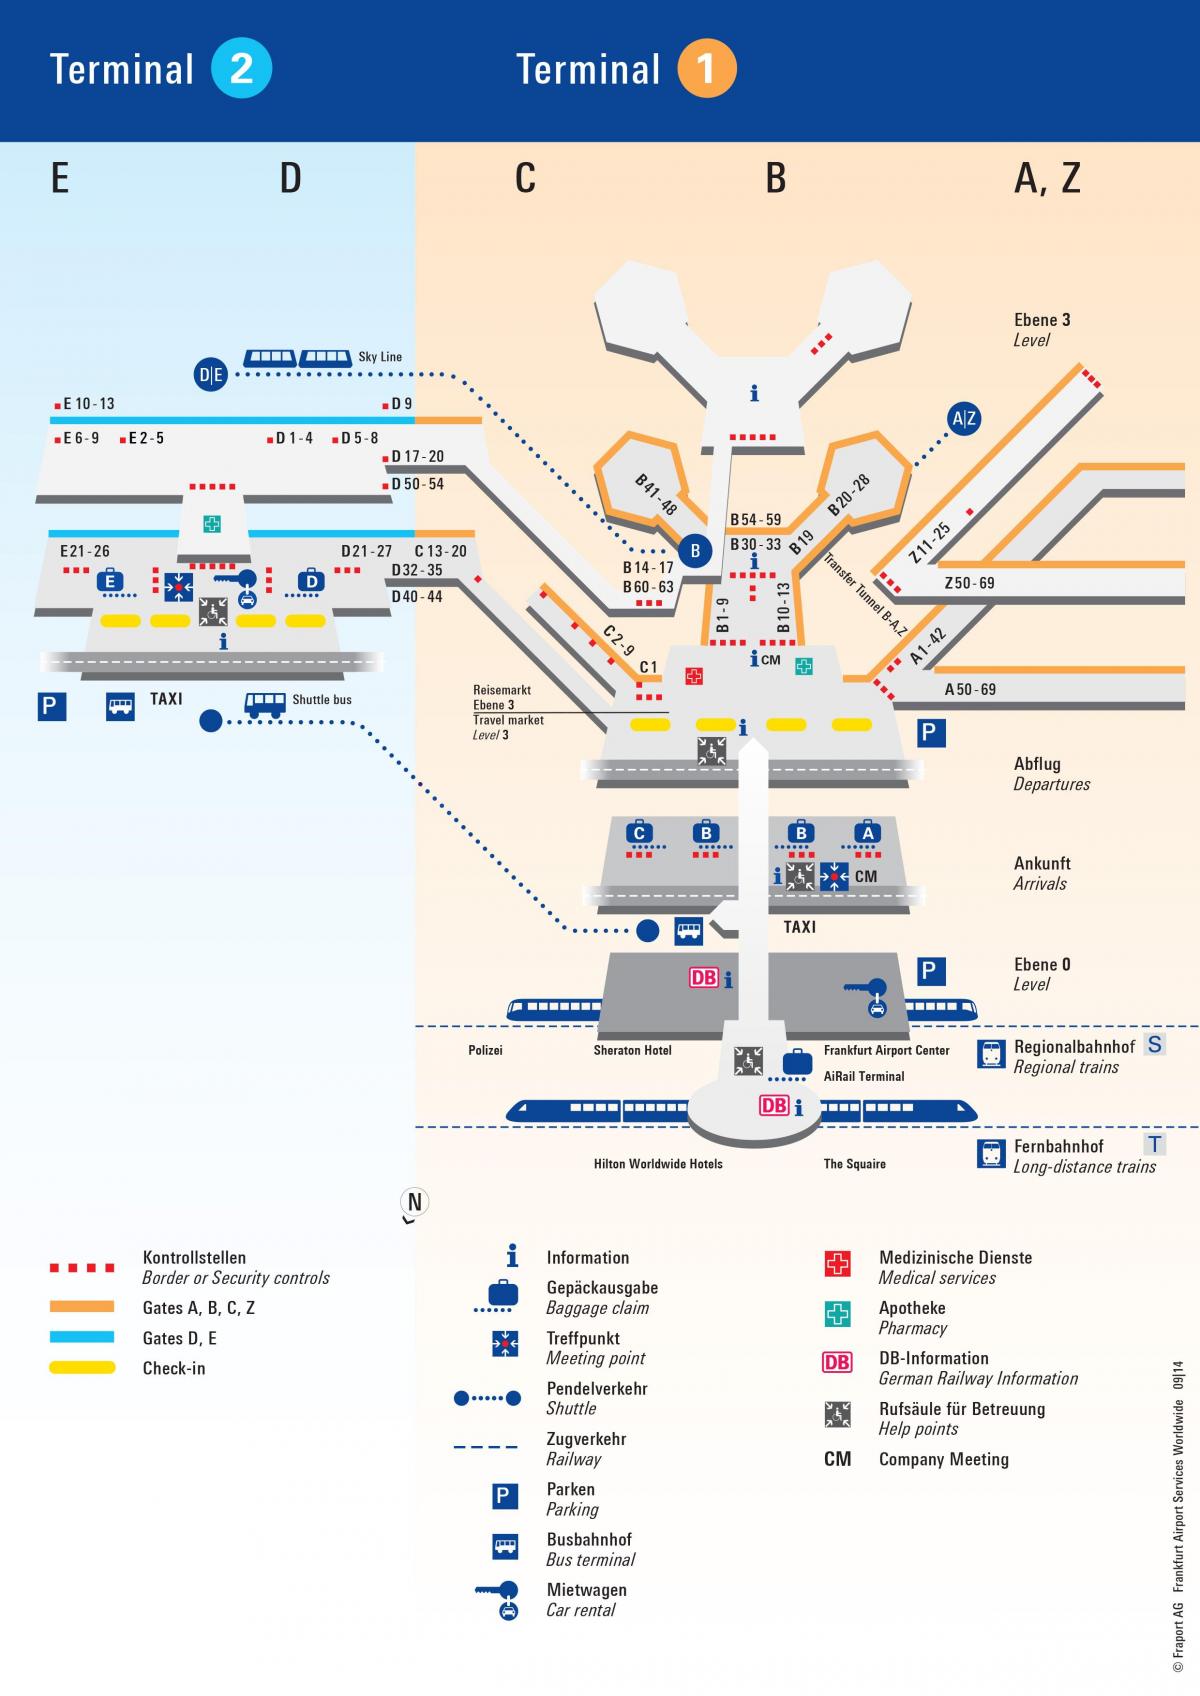 Mappa del terminal dell'aeroporto di Francoforte